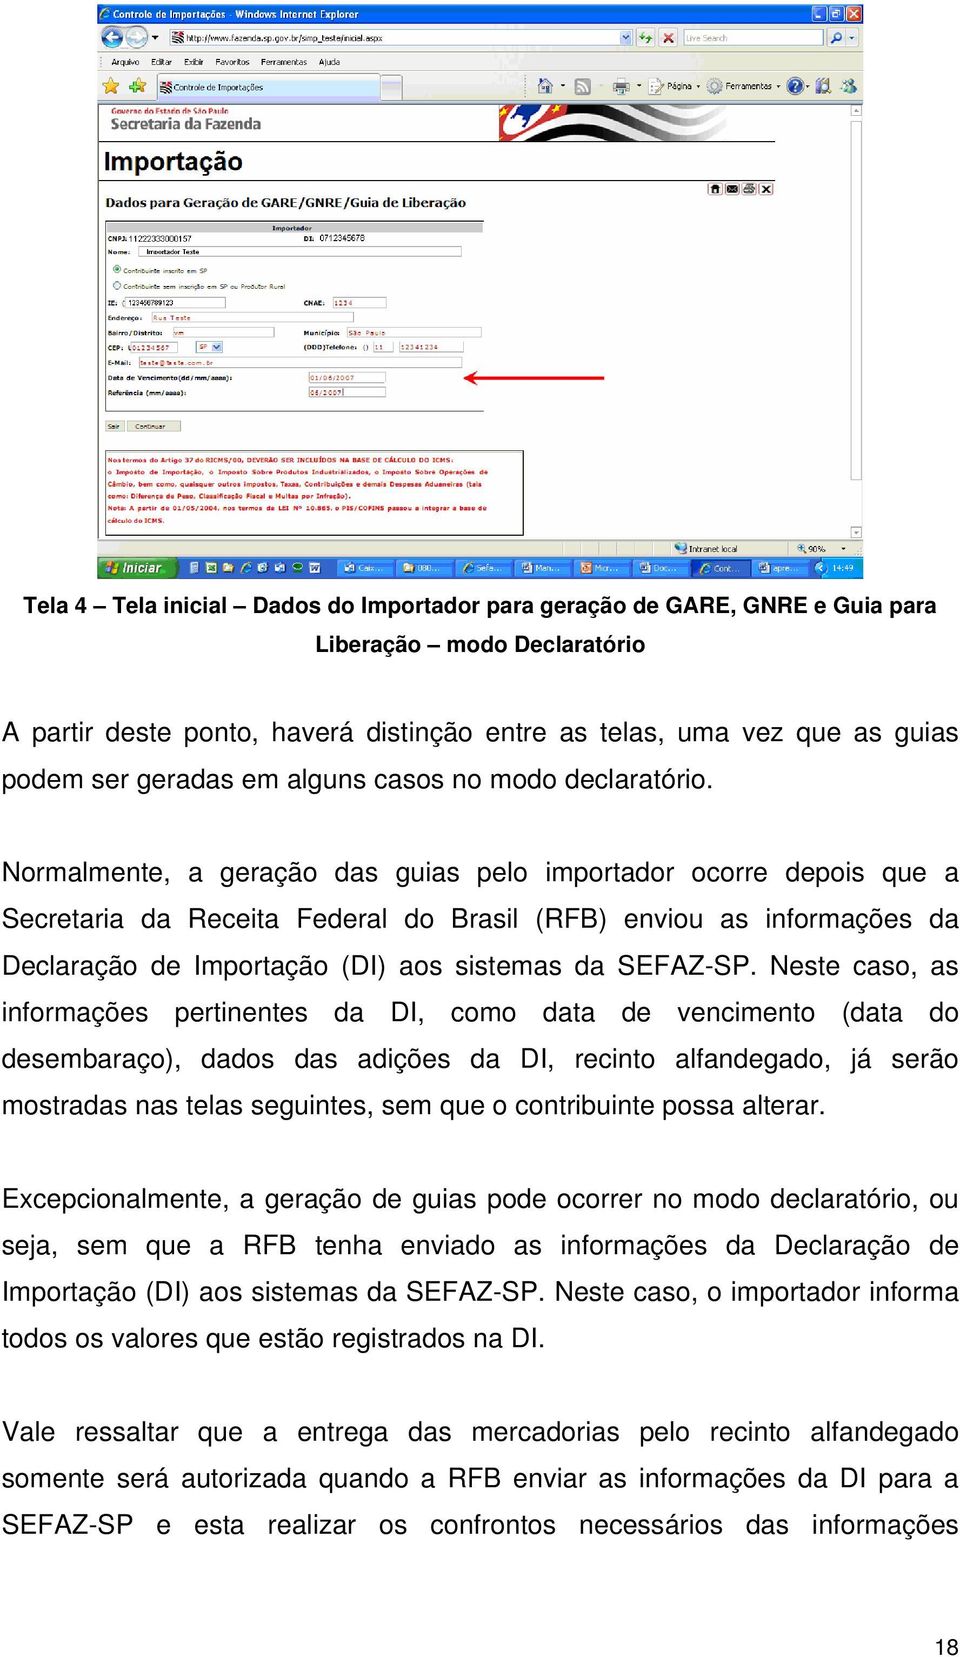 Normalmente, a geração das guias pelo importador ocorre depois que a Secretaria da Receita Federal do Brasil (RFB) enviou as informações da Declaração de Importação (DI) aos sistemas da SEFAZ-SP.